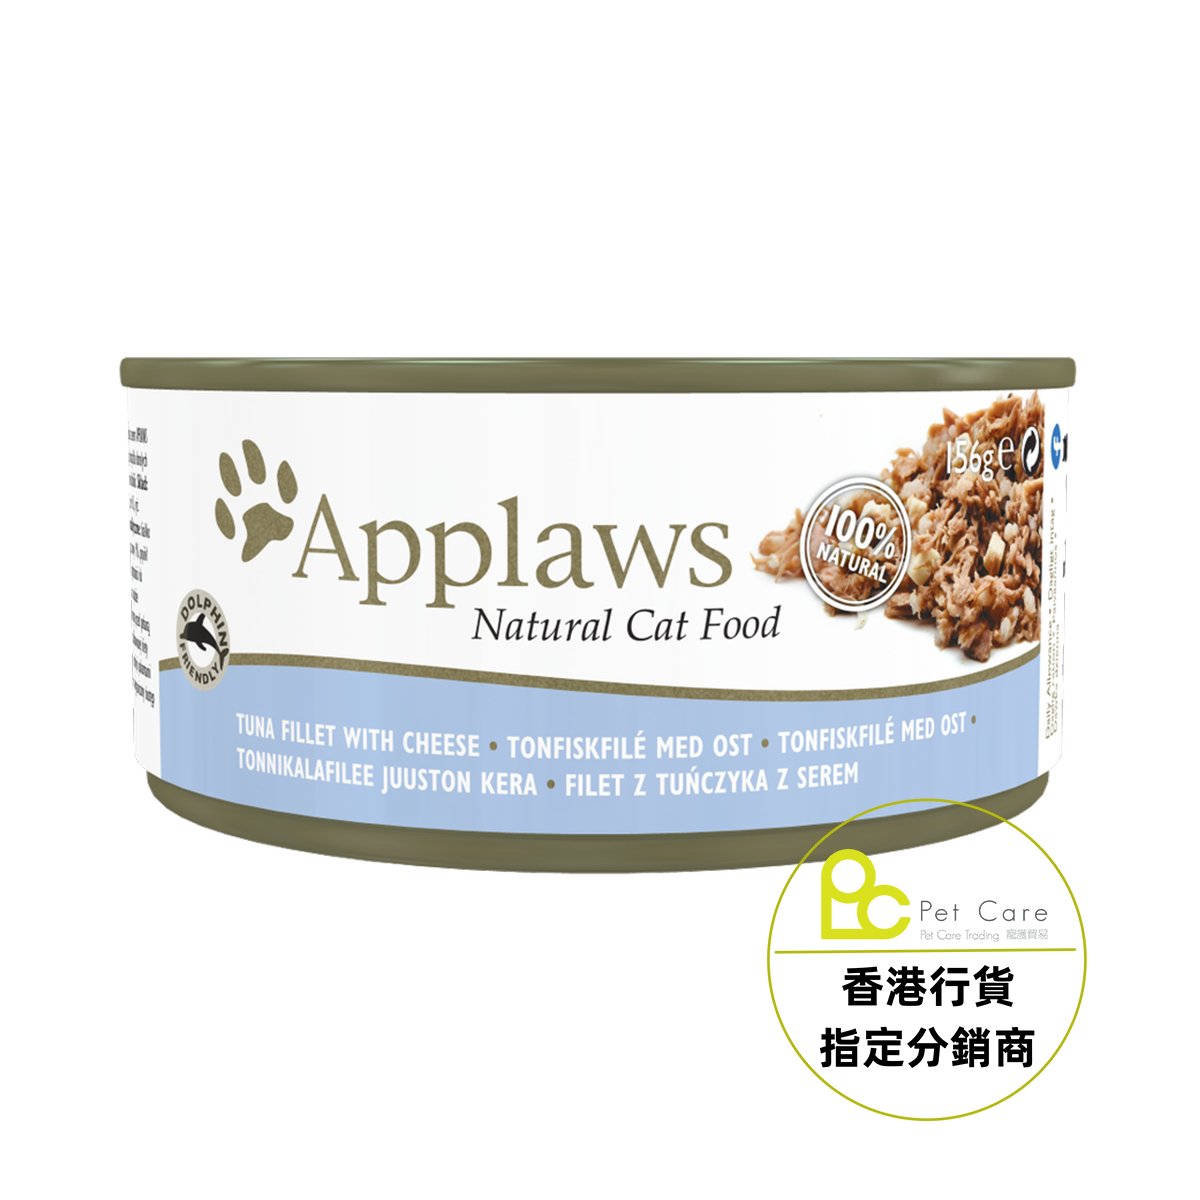 Applaws 全天然 156g 貓罐頭 - 吞拿魚芝士 (大)